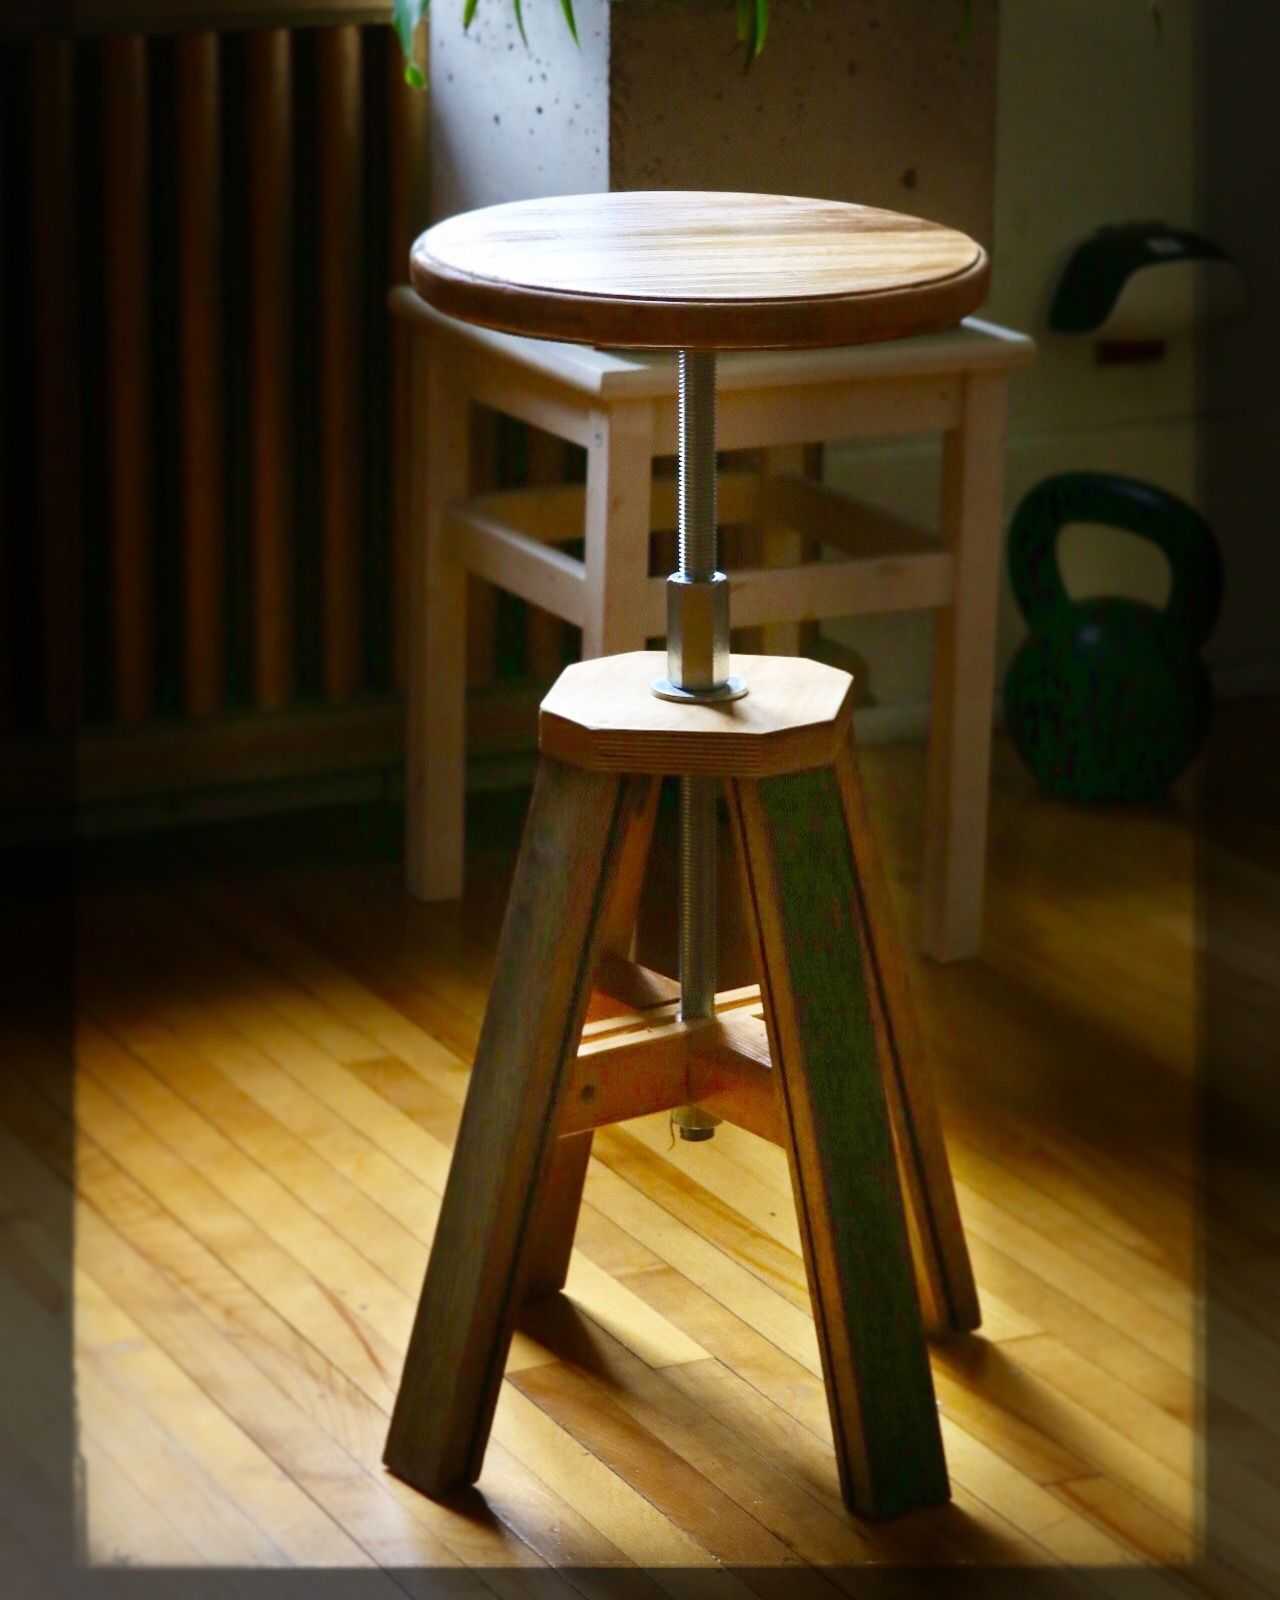 Барный стул своими руками (28 фото): барные модели из дерева, фанеры и металла, как сделать деревянный вариант для барной стойки